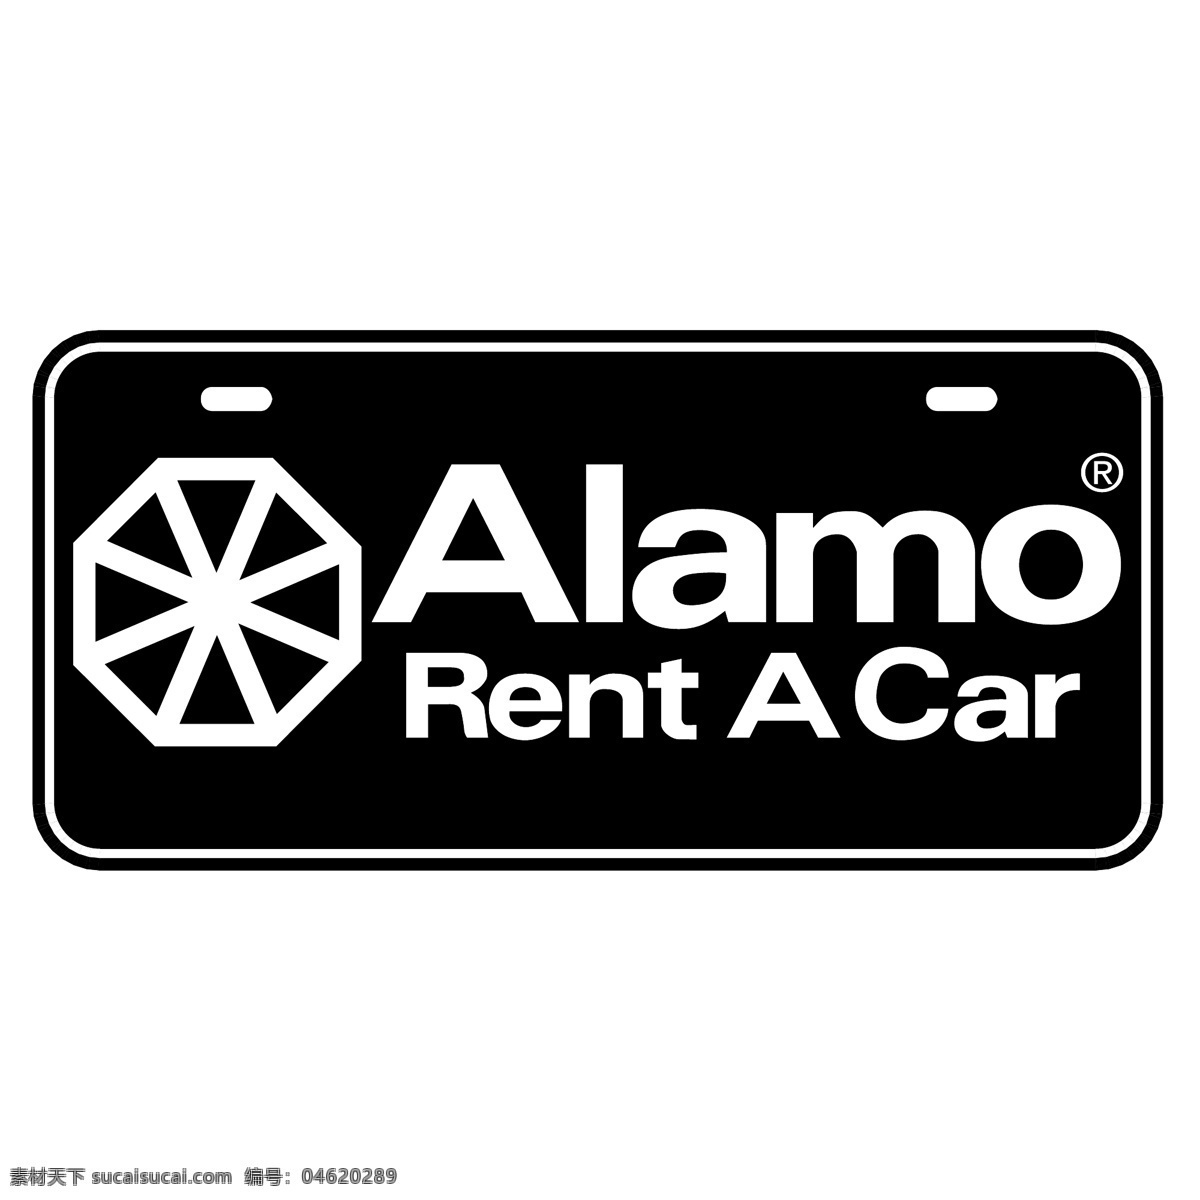 阿拉莫 标识 公司 免费 品牌 品牌标识 商标 矢量标志下载 免费矢量标识 矢量 psd源文件 logo设计